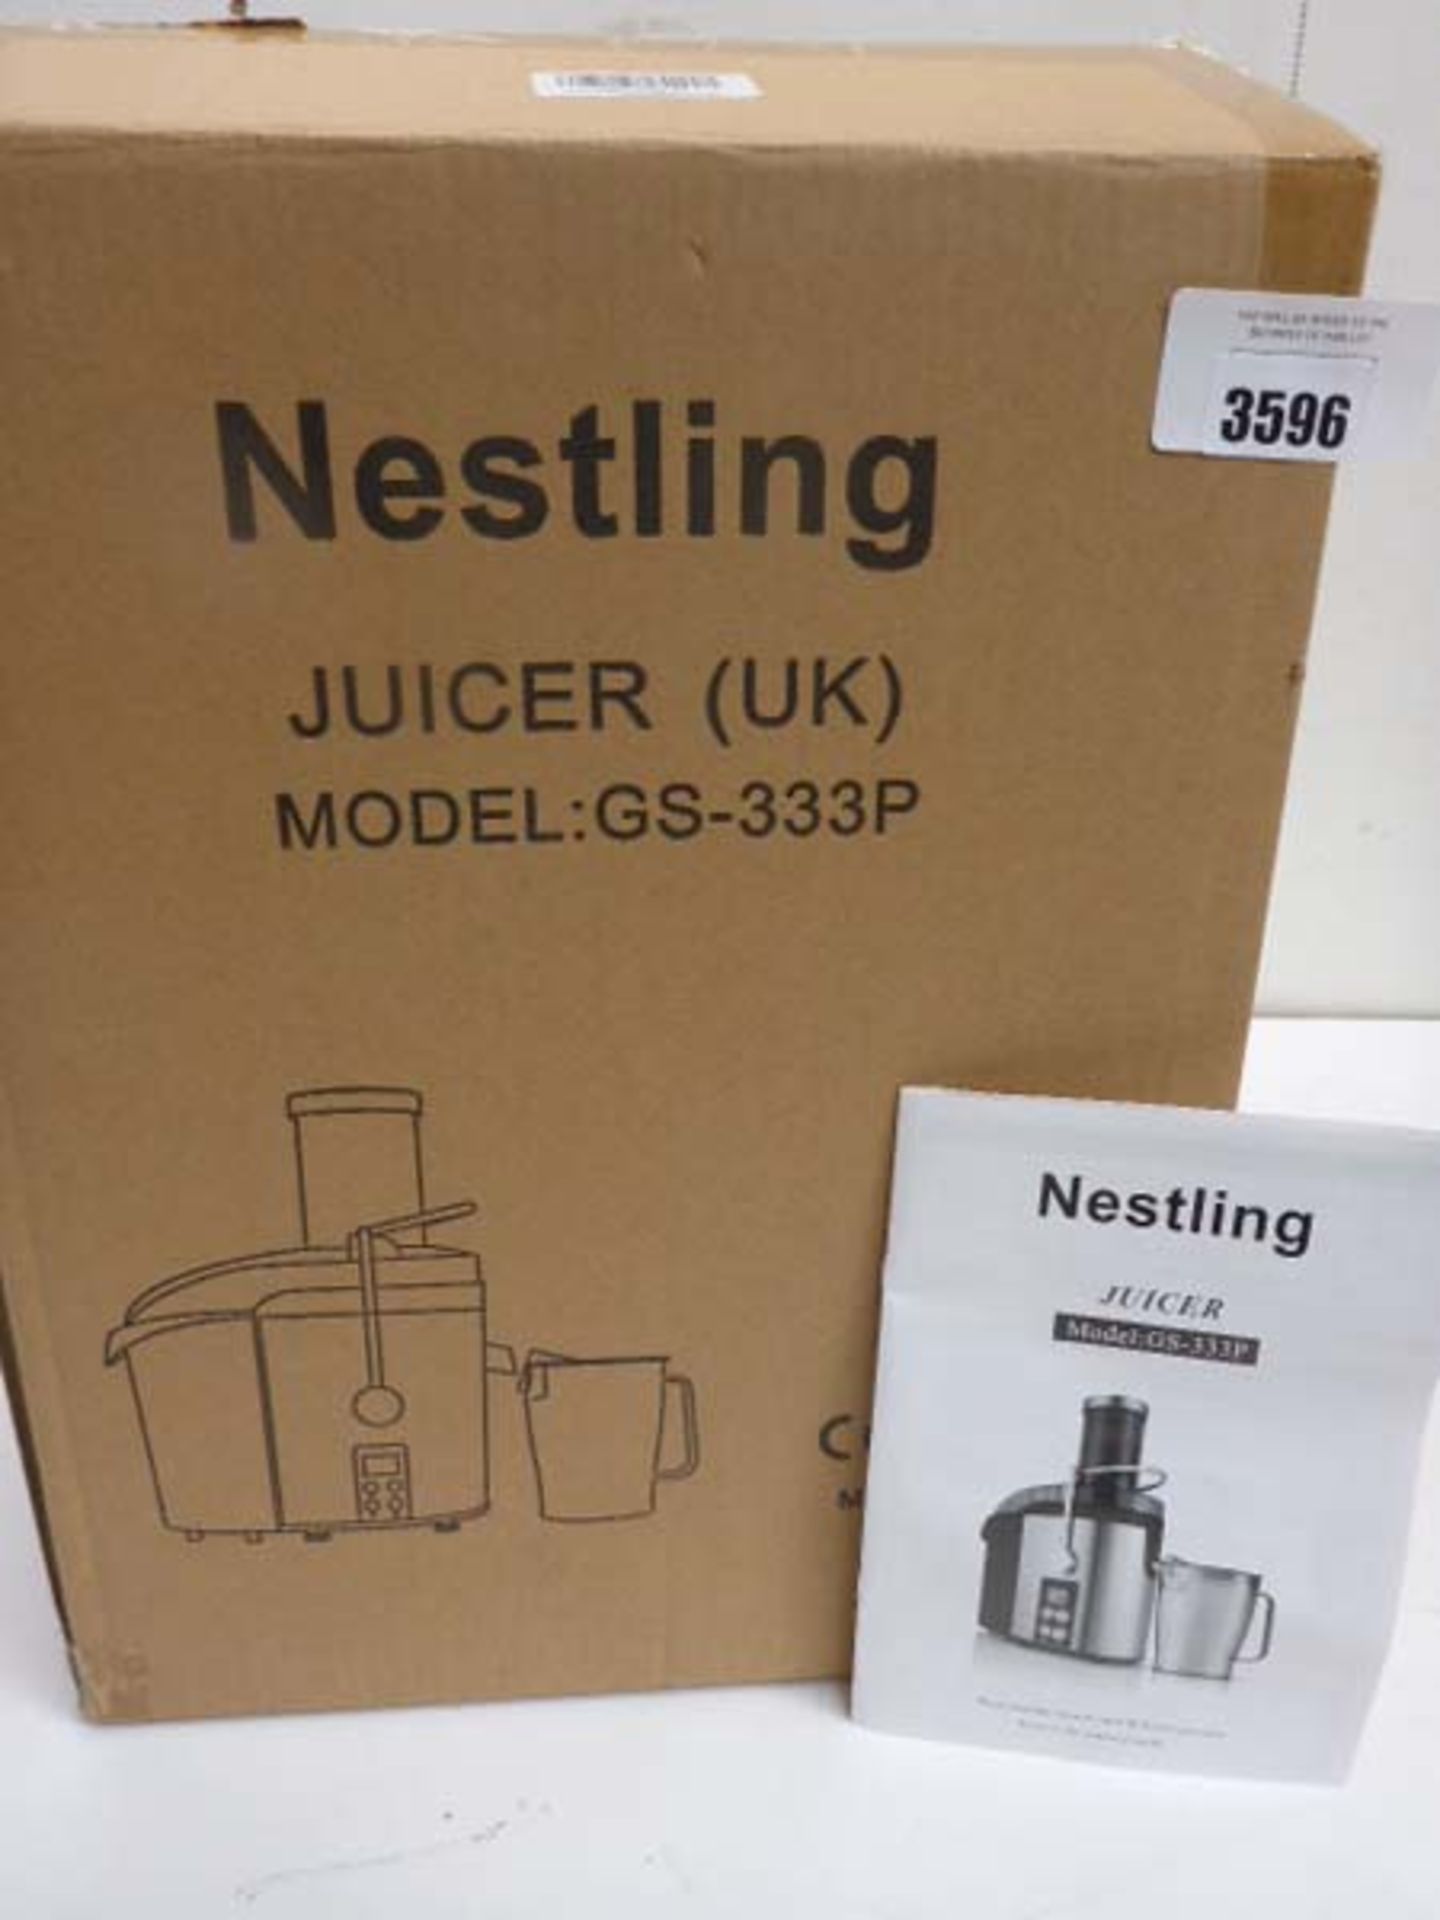 Nestling GS-333P juicer